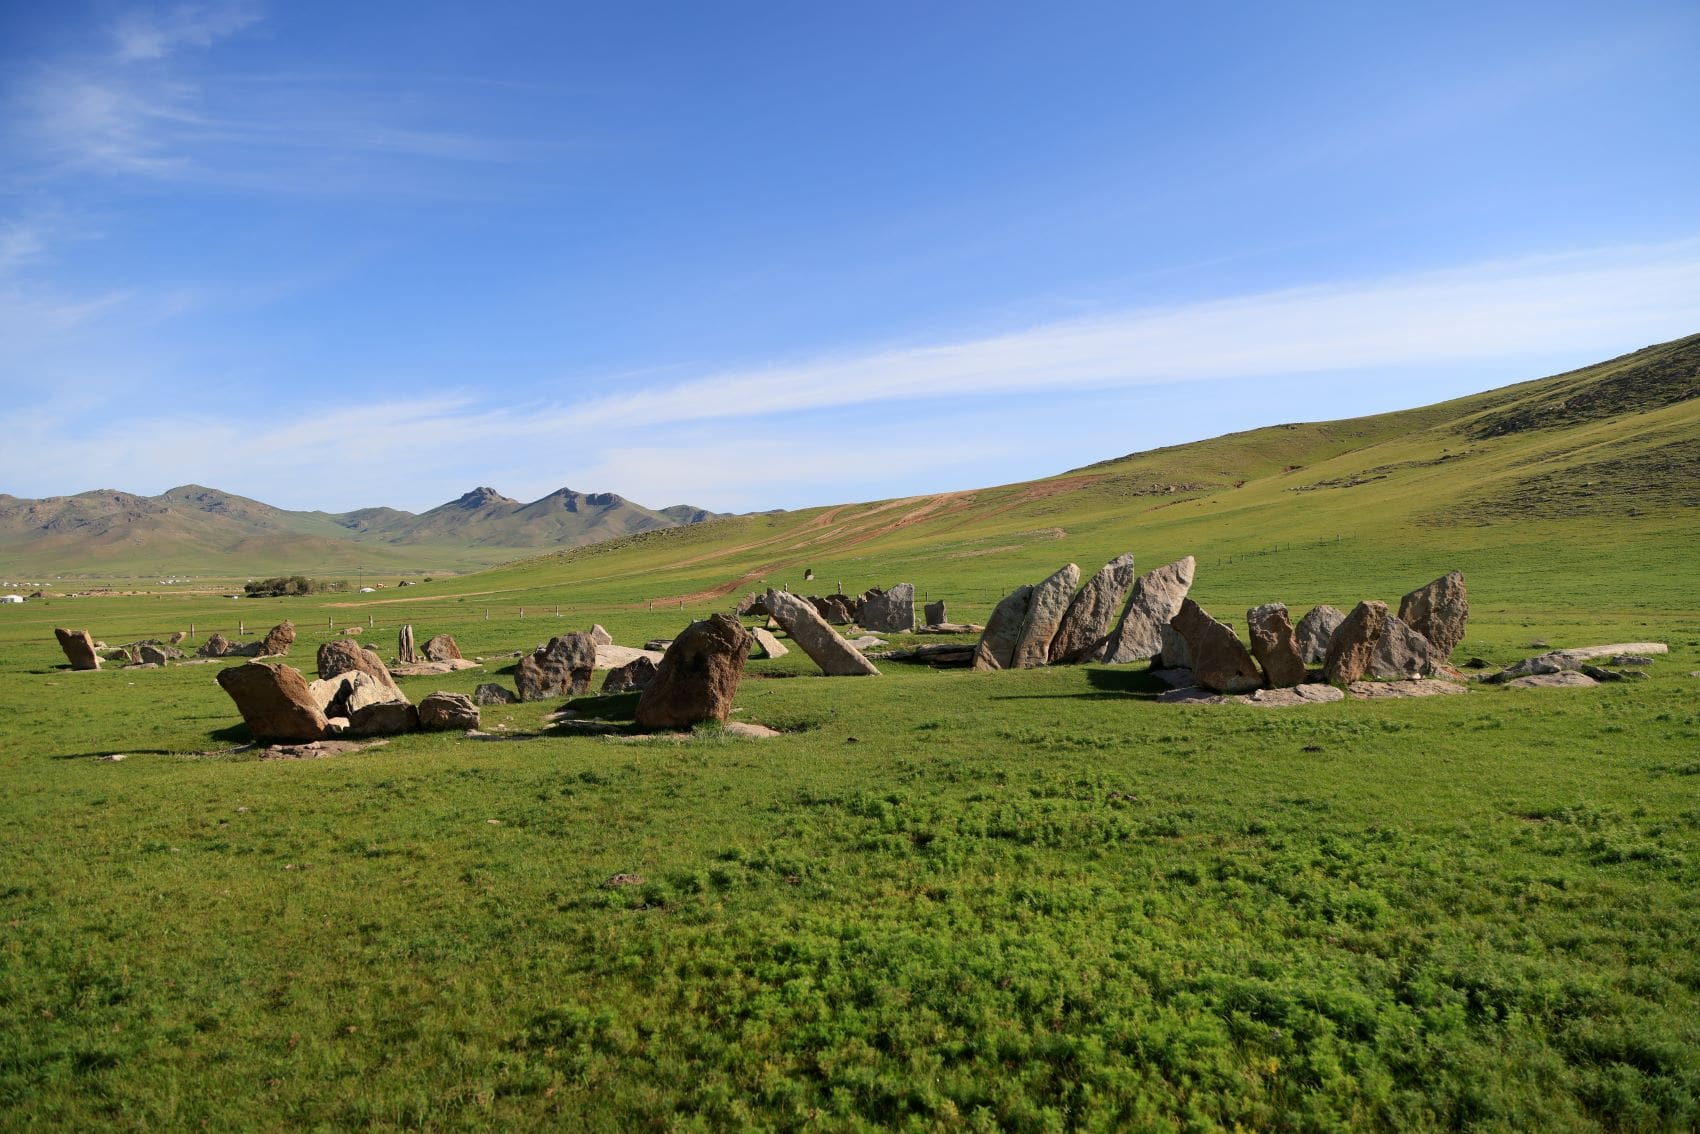 Hirschdenkmäler und quadratische Gräber von Temeen Chuluu, Mongolei